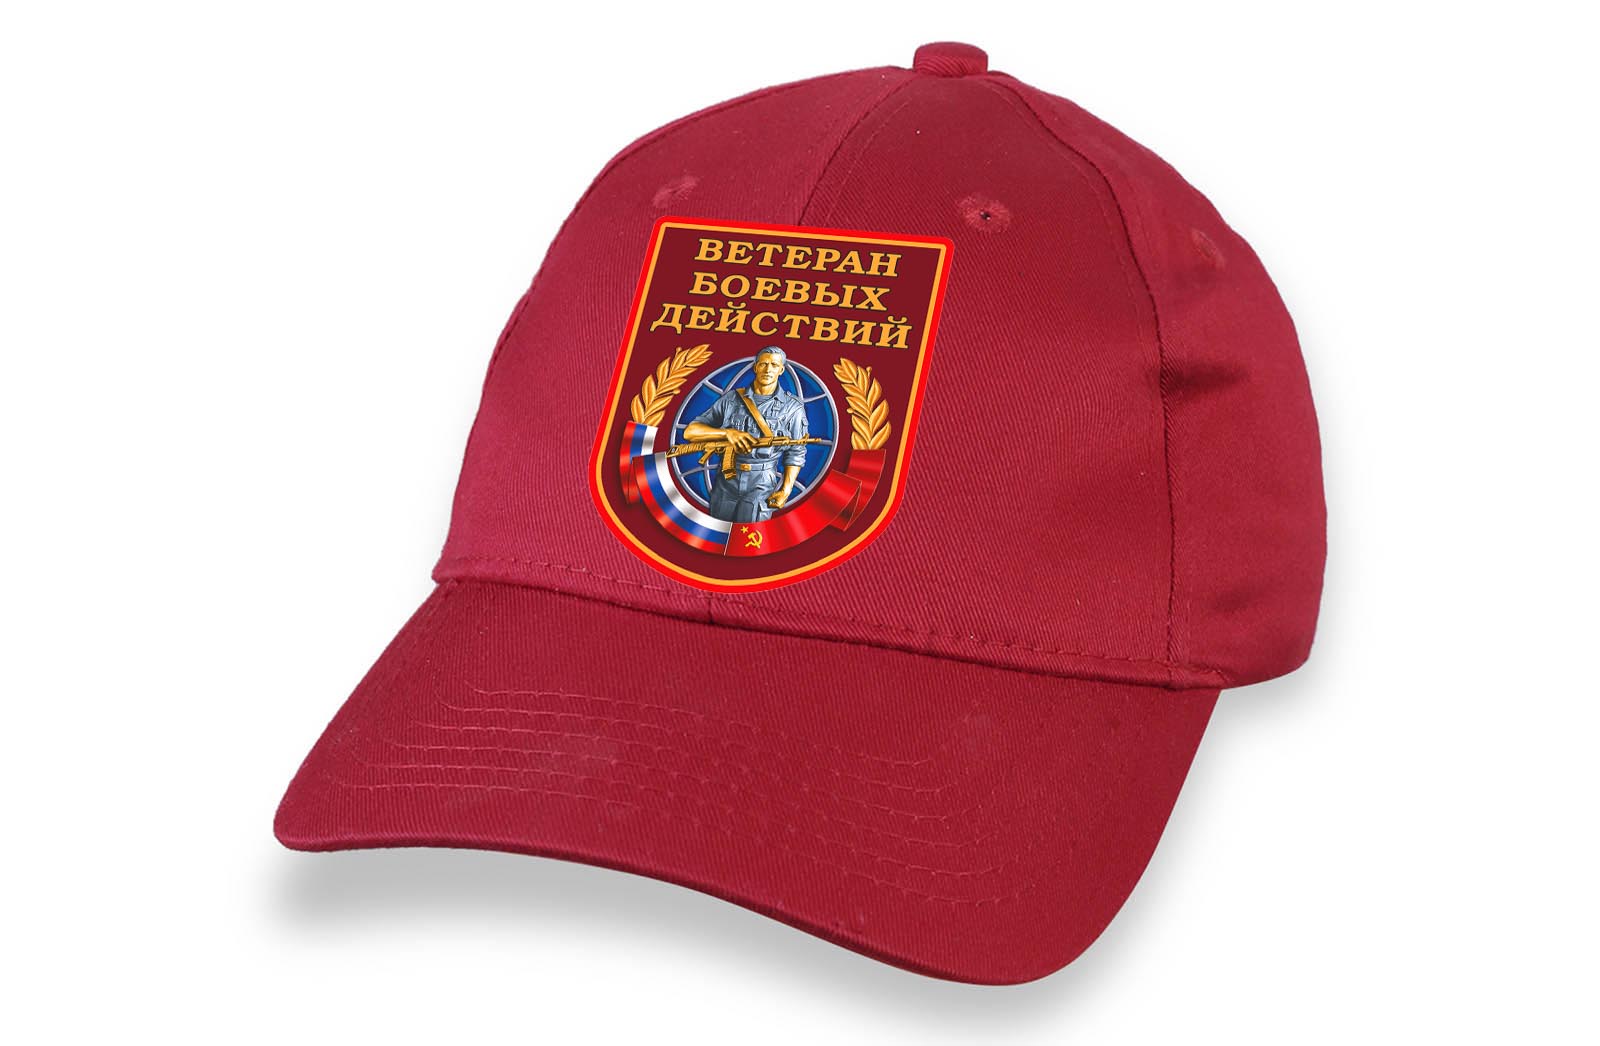 Красная кепка "Ветеран боевых действий" – "Миссия выполнима"